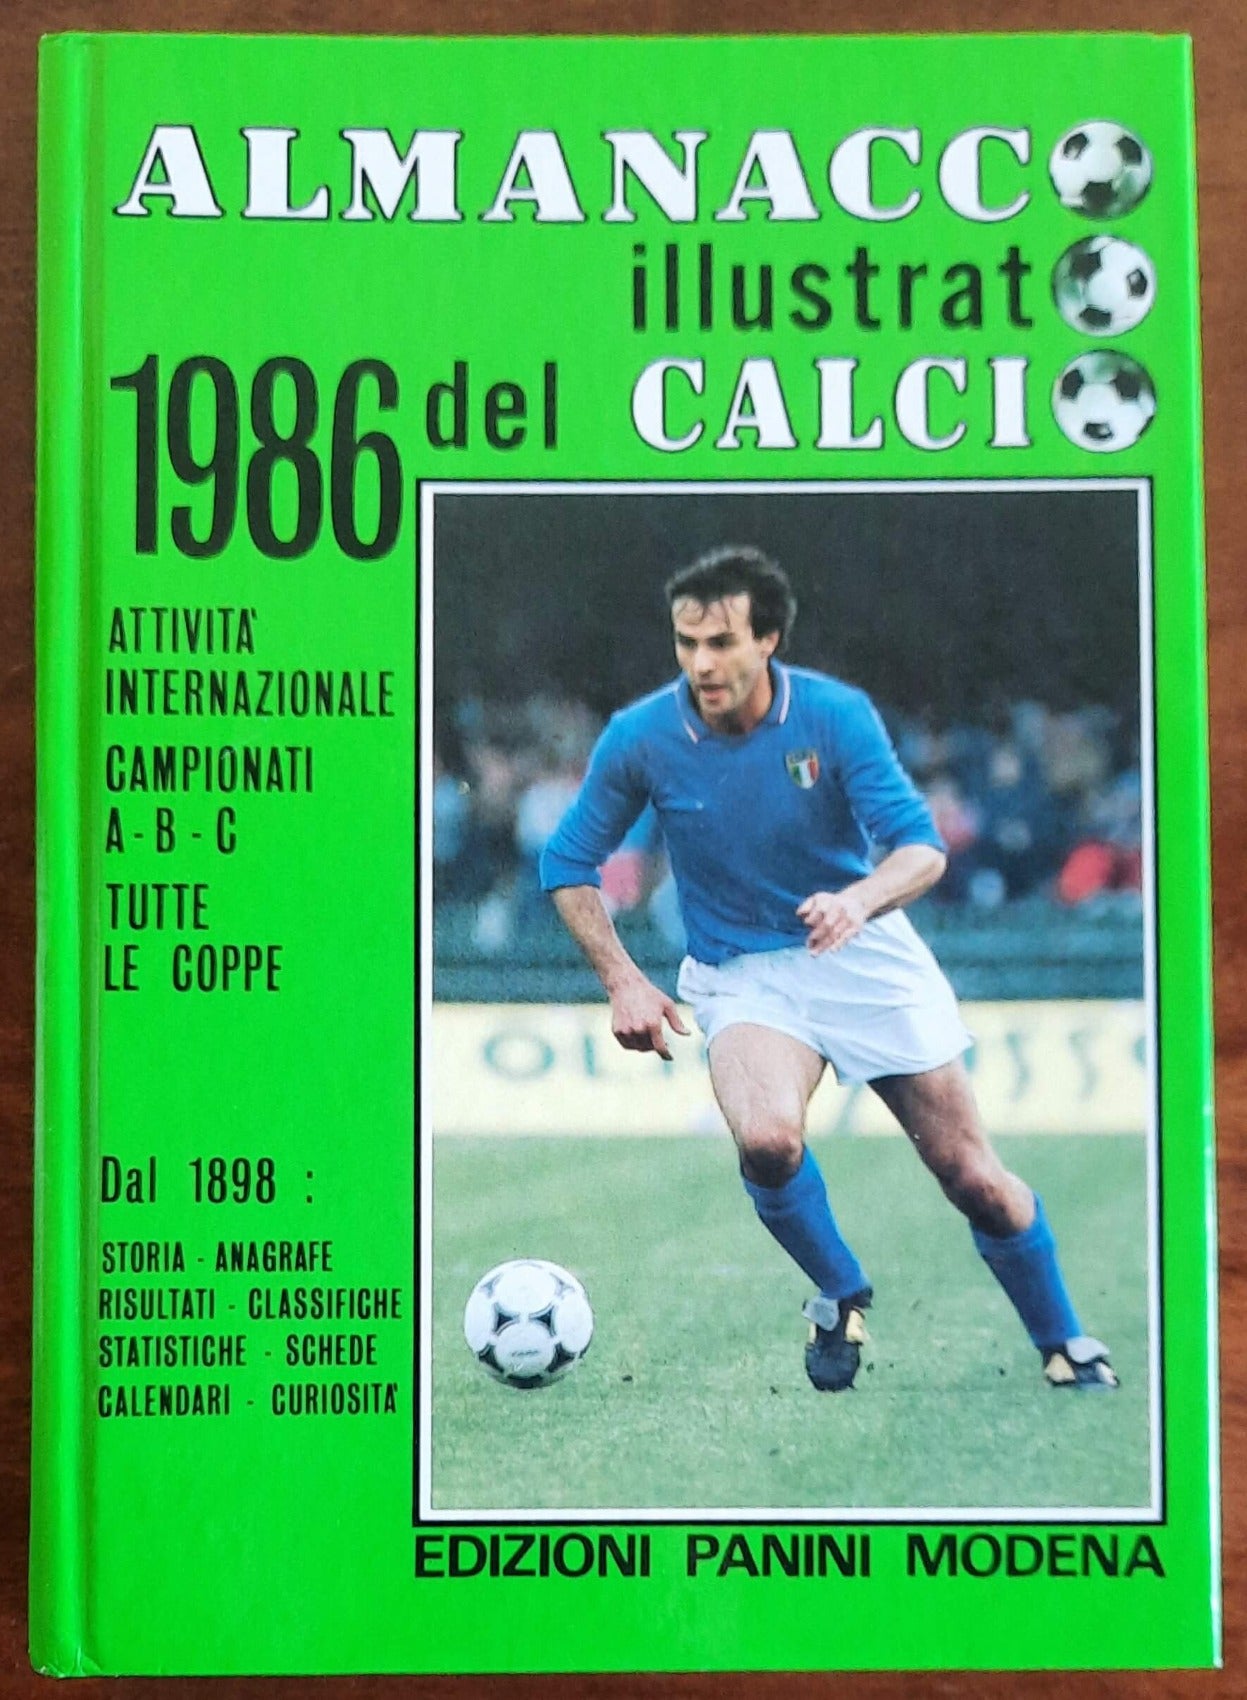 Almanacco illustrato del calcio 1986 - Edizioni Panini